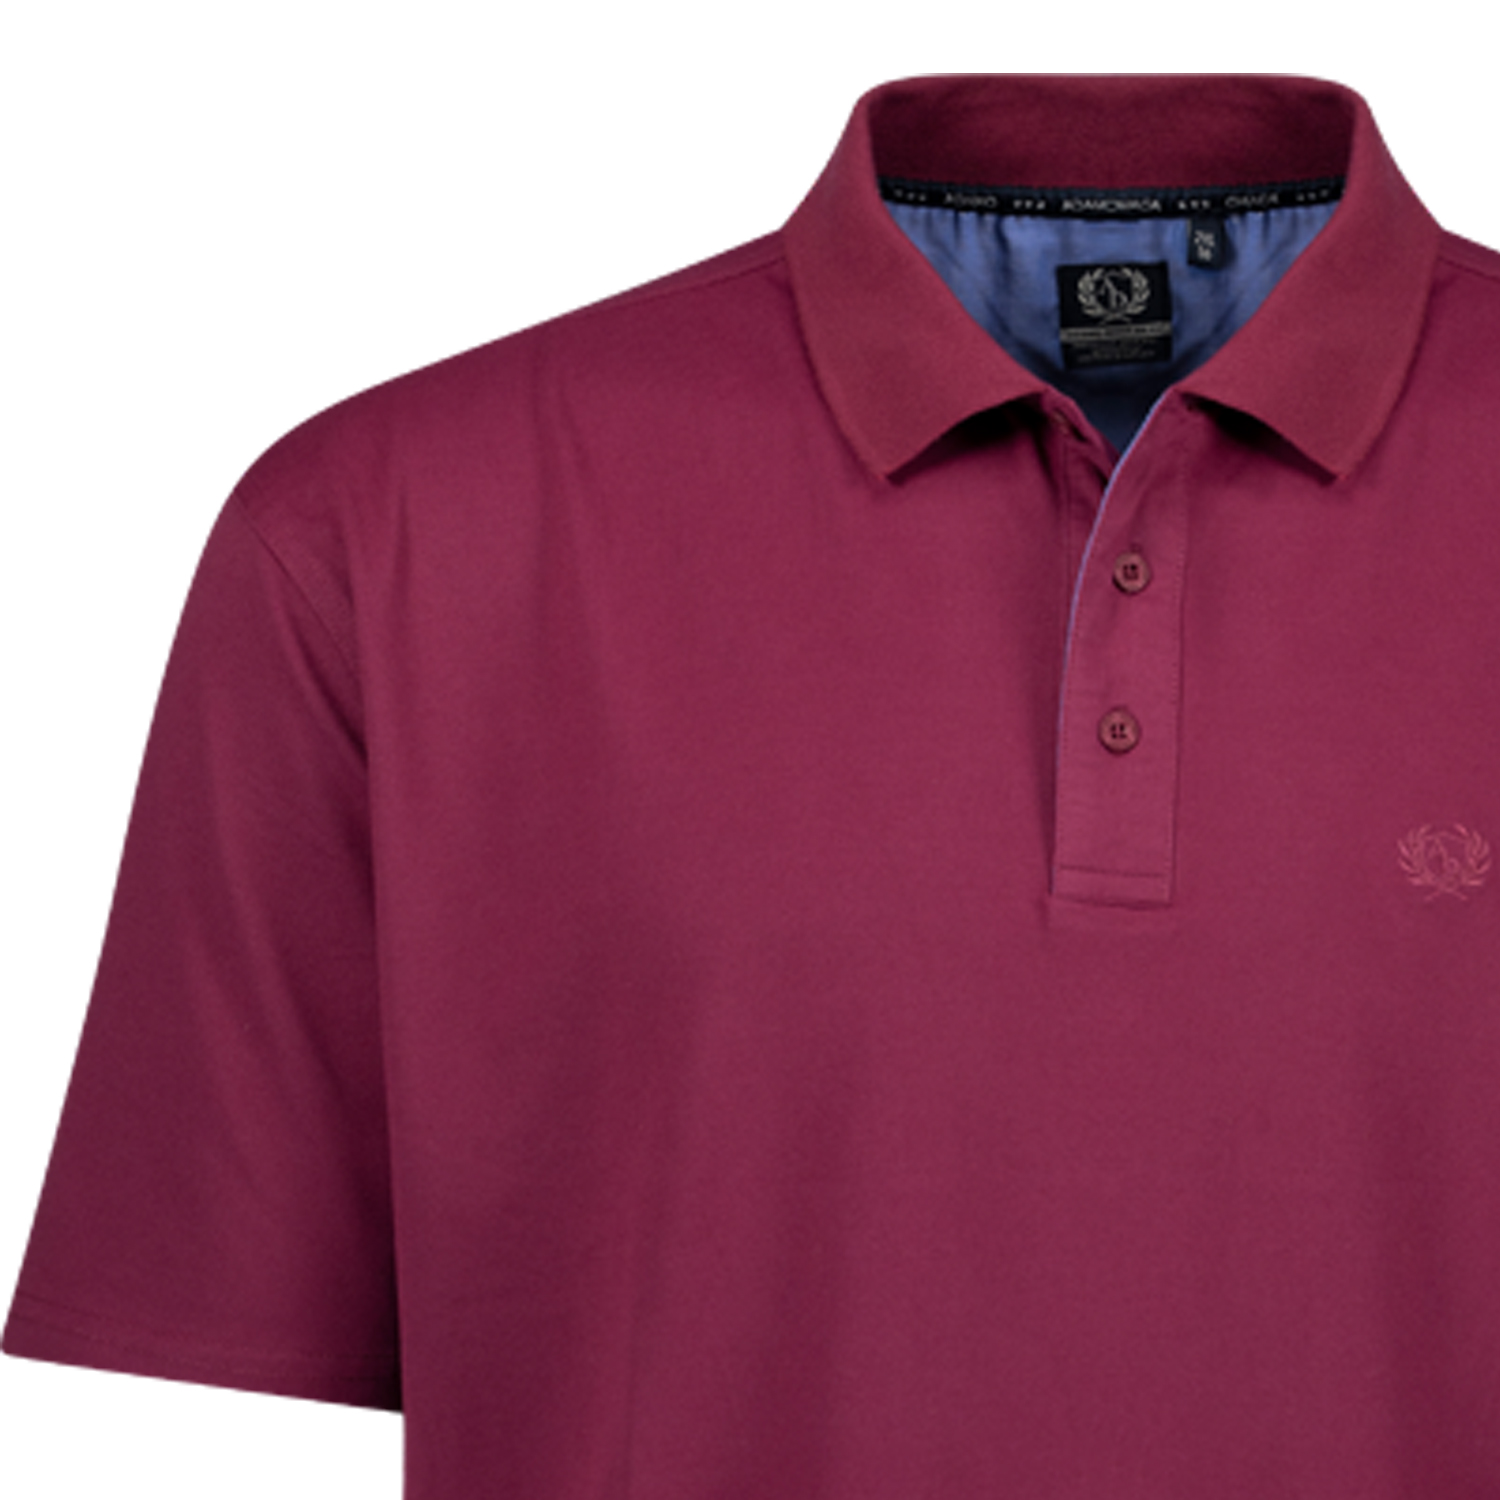 Kurzarm Polo Shirt PICCO von ADAMO in brombeer für Herren in großen Größen bis 12XL